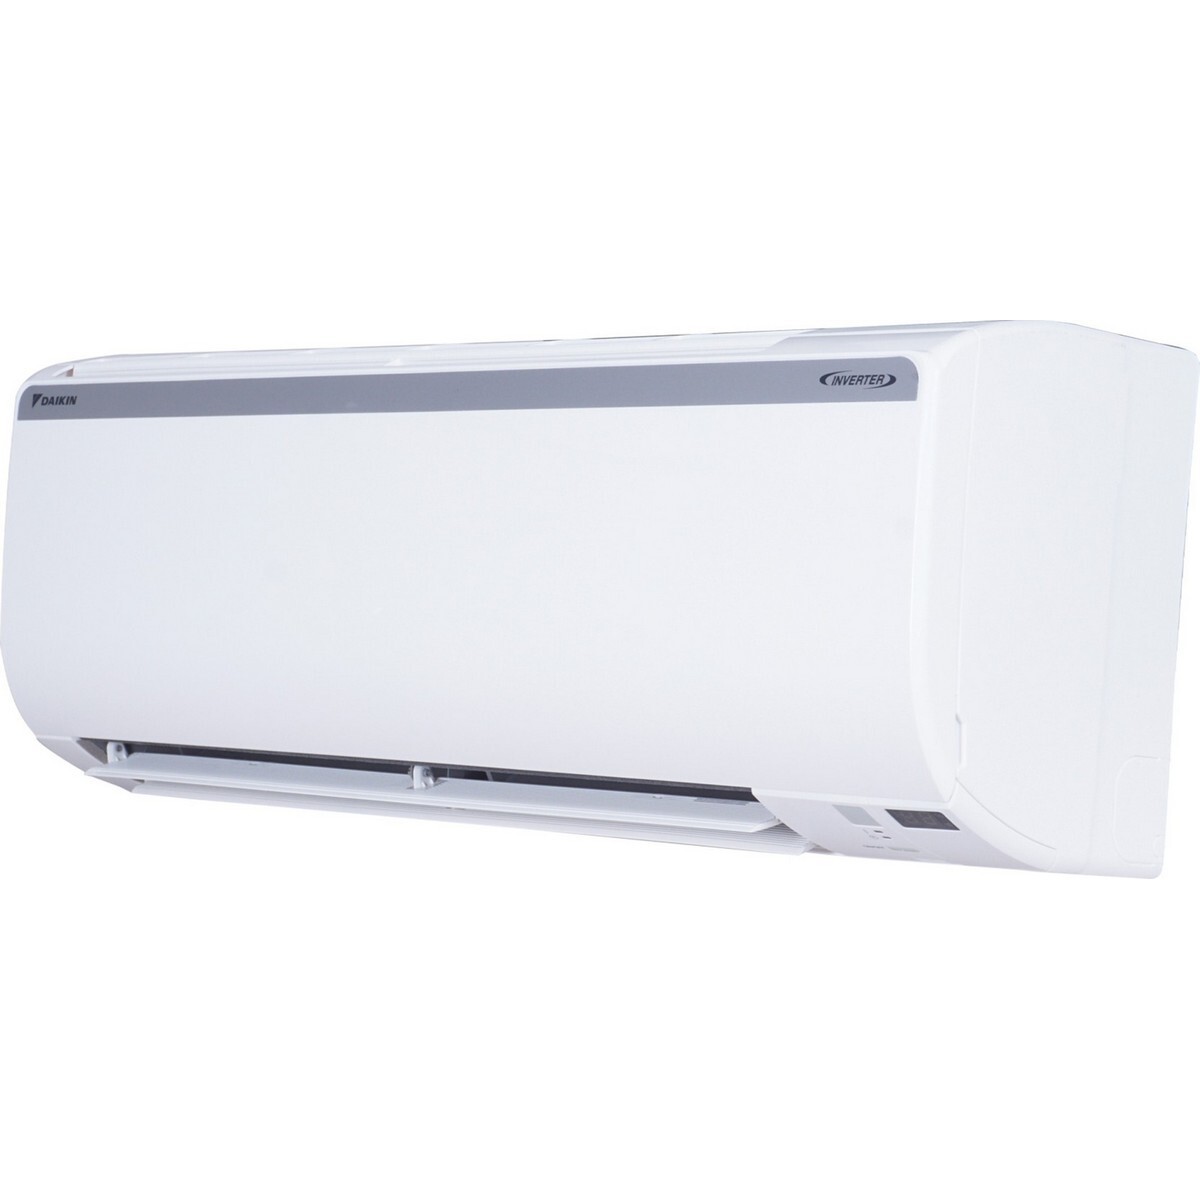 Daikin Inverter Air Conditioner FTKL35UV16 1Ton 3*